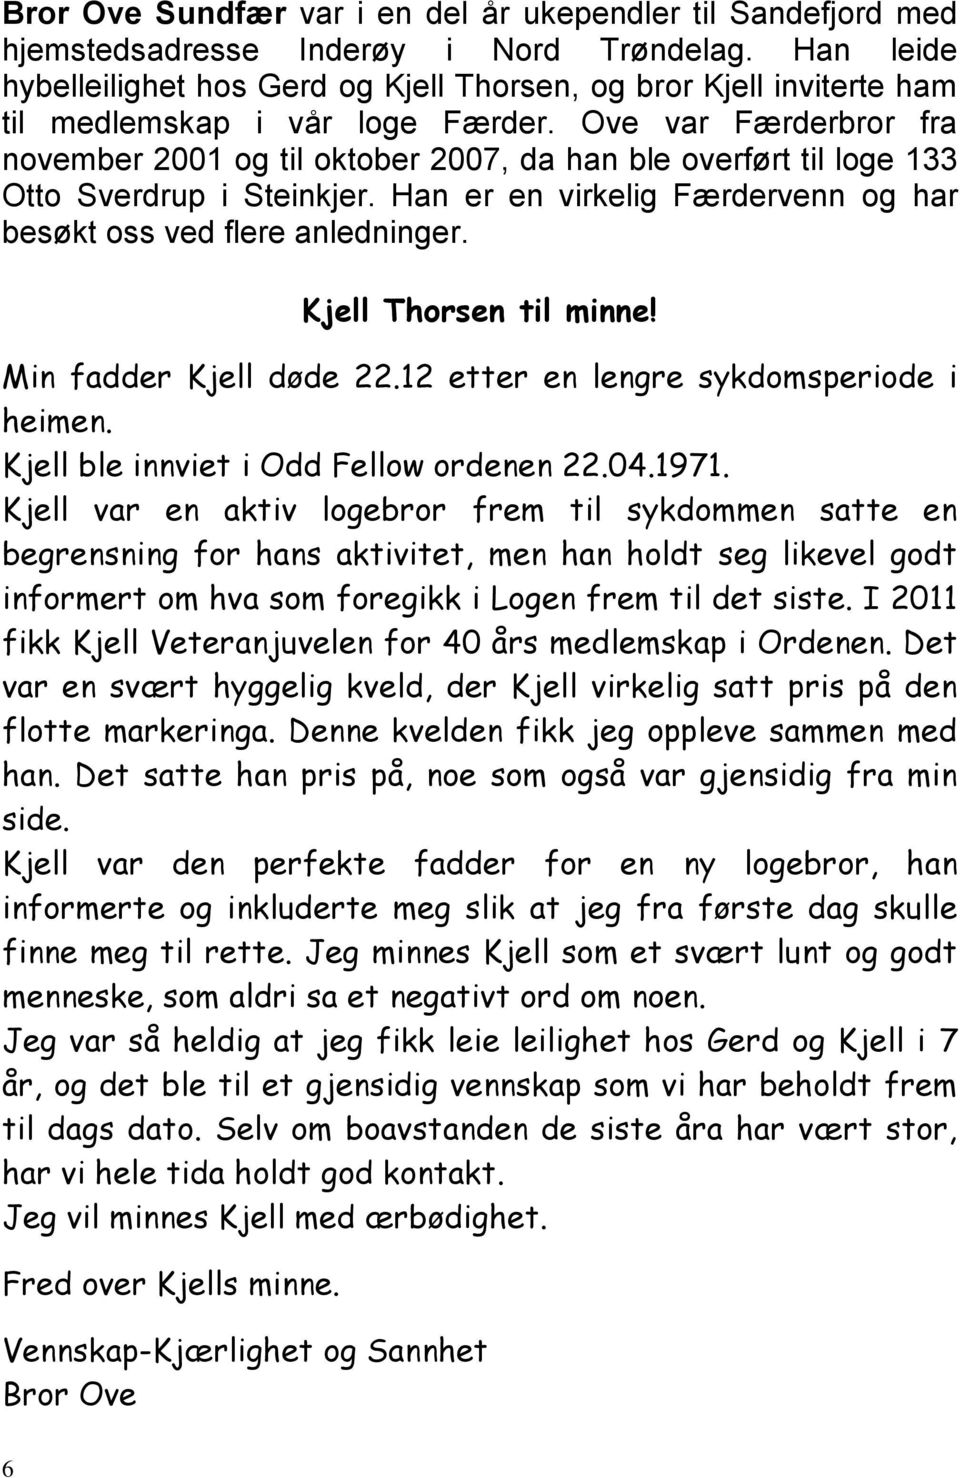 Ove var Færderbror fra november 2001 og til oktober 2007, da han ble overført til loge 133 Otto Sverdrup i Steinkjer. Han er en virkelig Færdervenn og har besøkt oss ved flere anledninger.